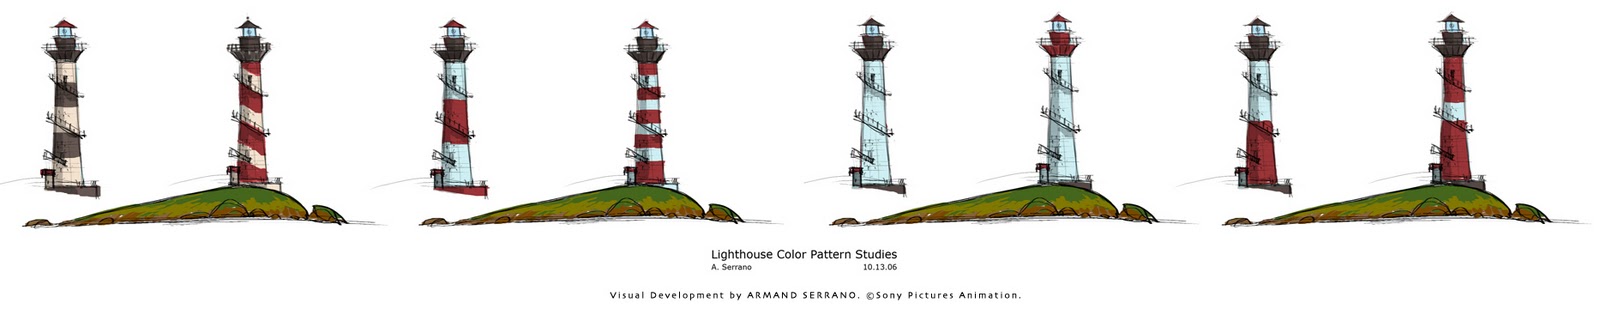 A R M A N D S E R R A N O: Lighthouse: A Visdev Process